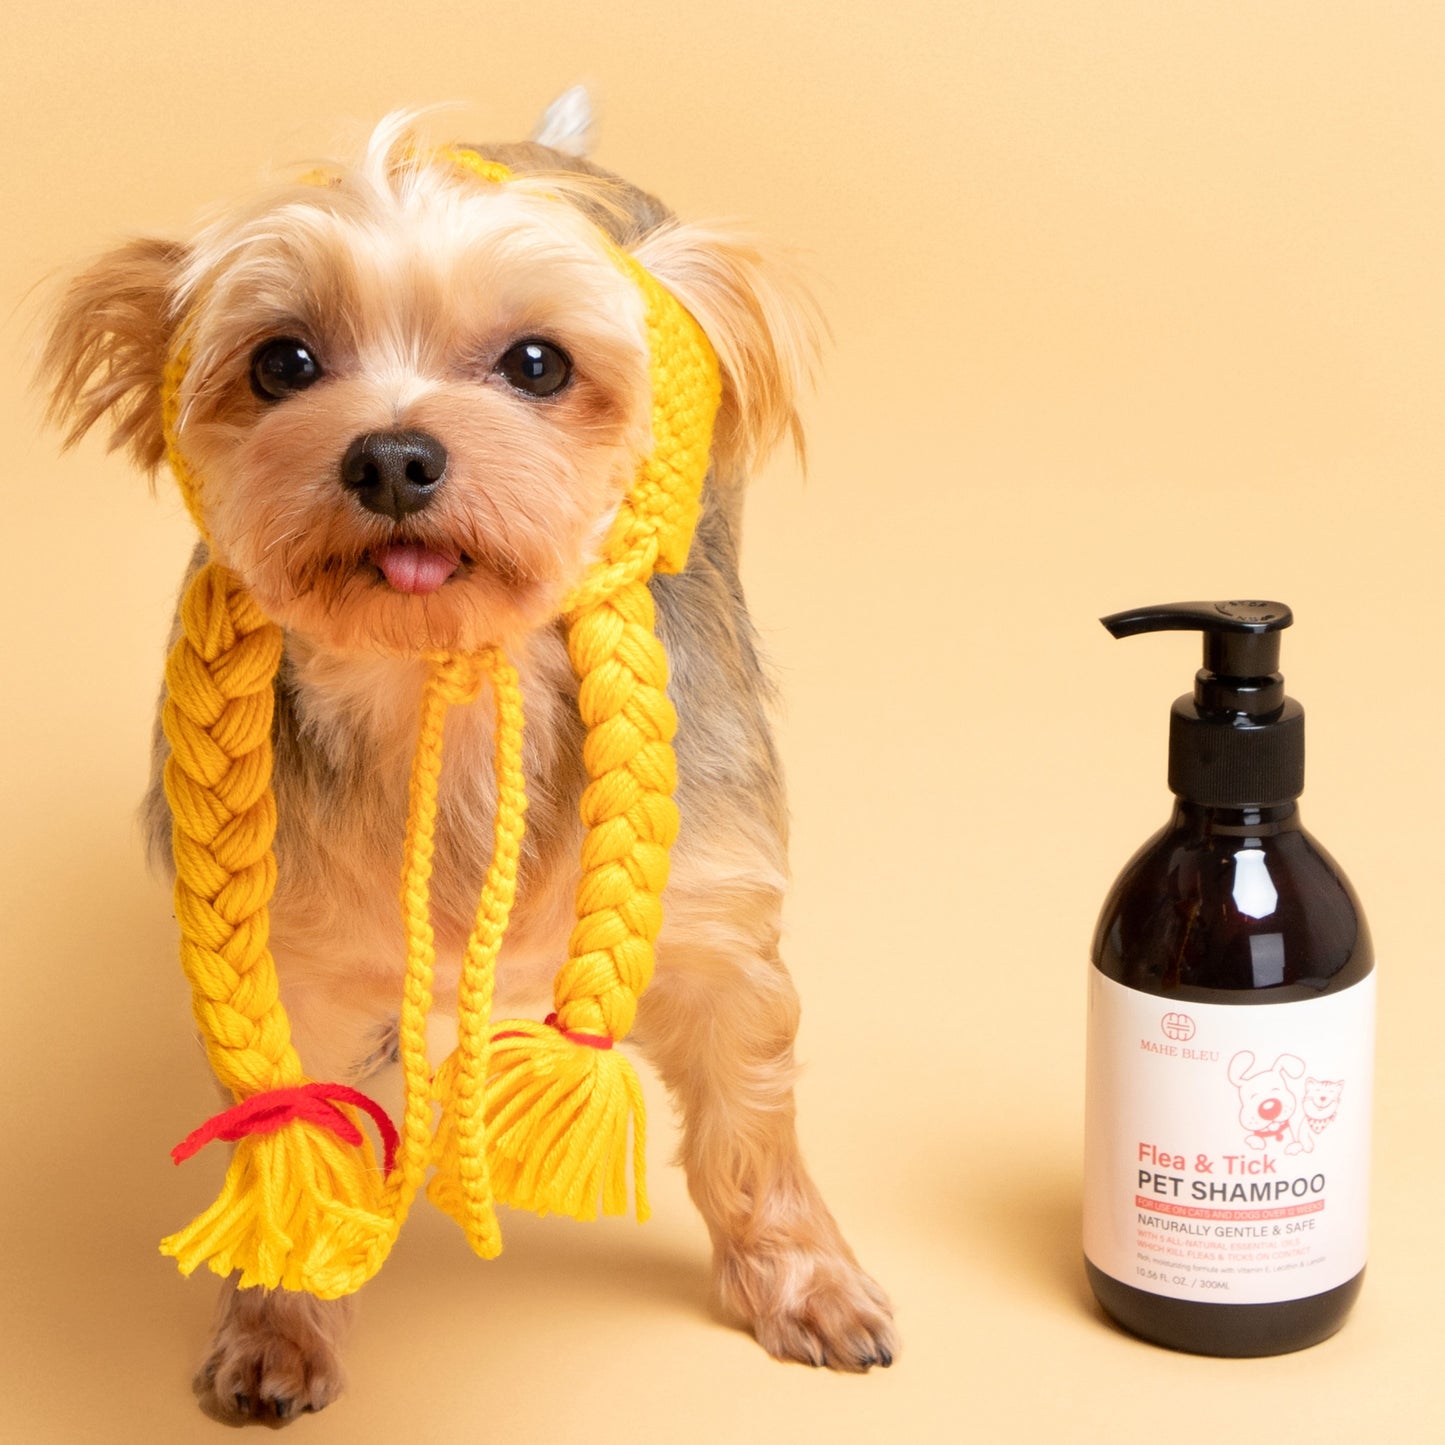 Flea & Tick Pet Shampoo